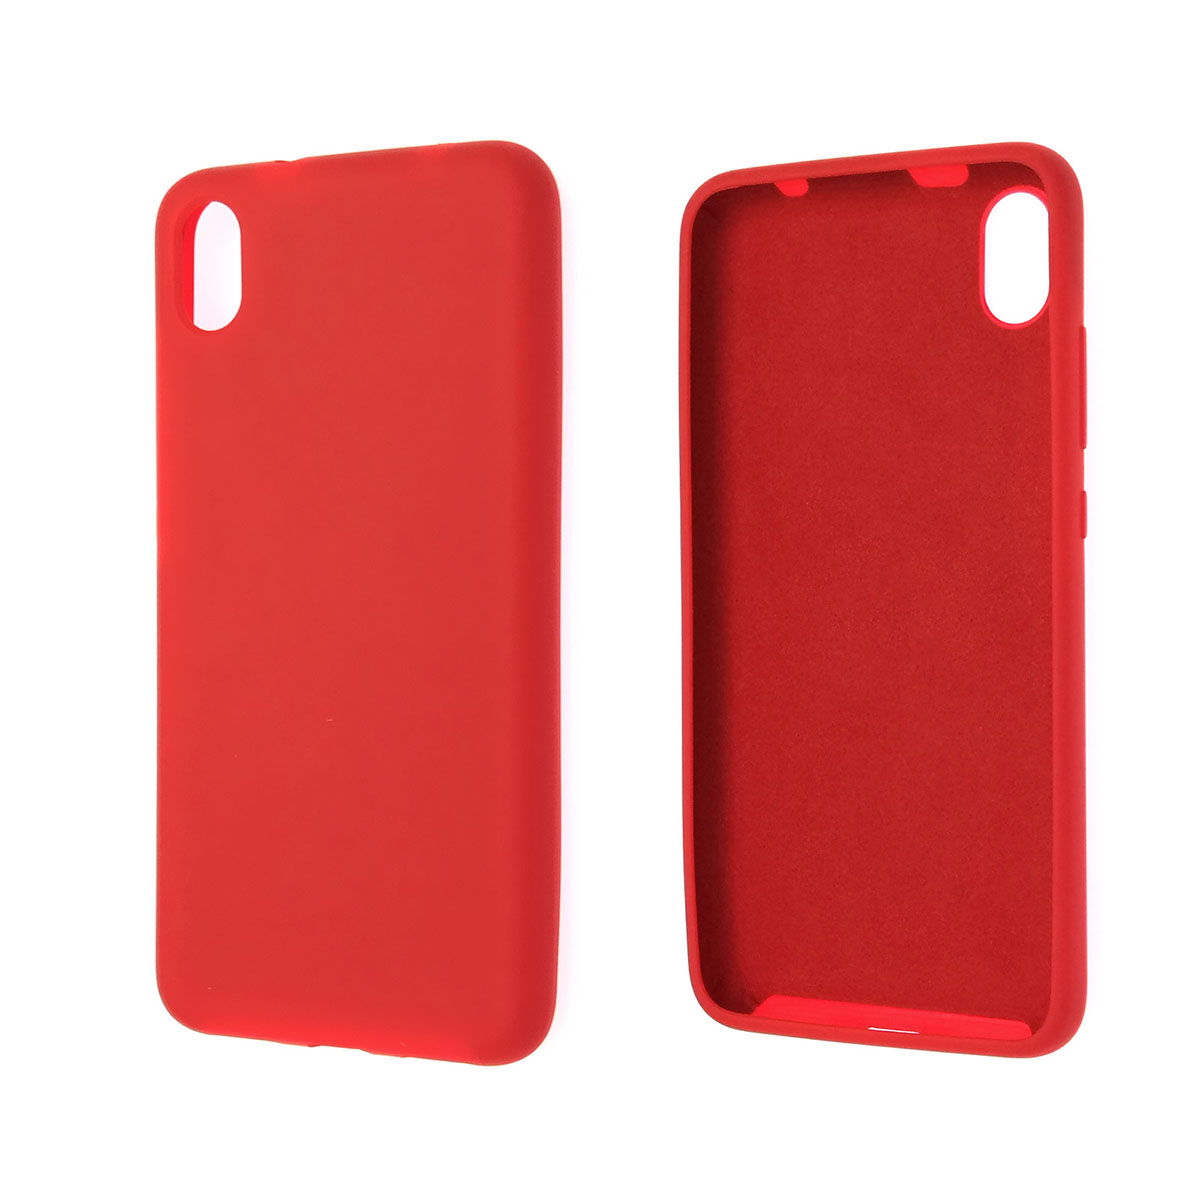 Чехол накладка Silicon Cover для XIAOMI Redmi 7A, силикон, бархат, цвет красный.